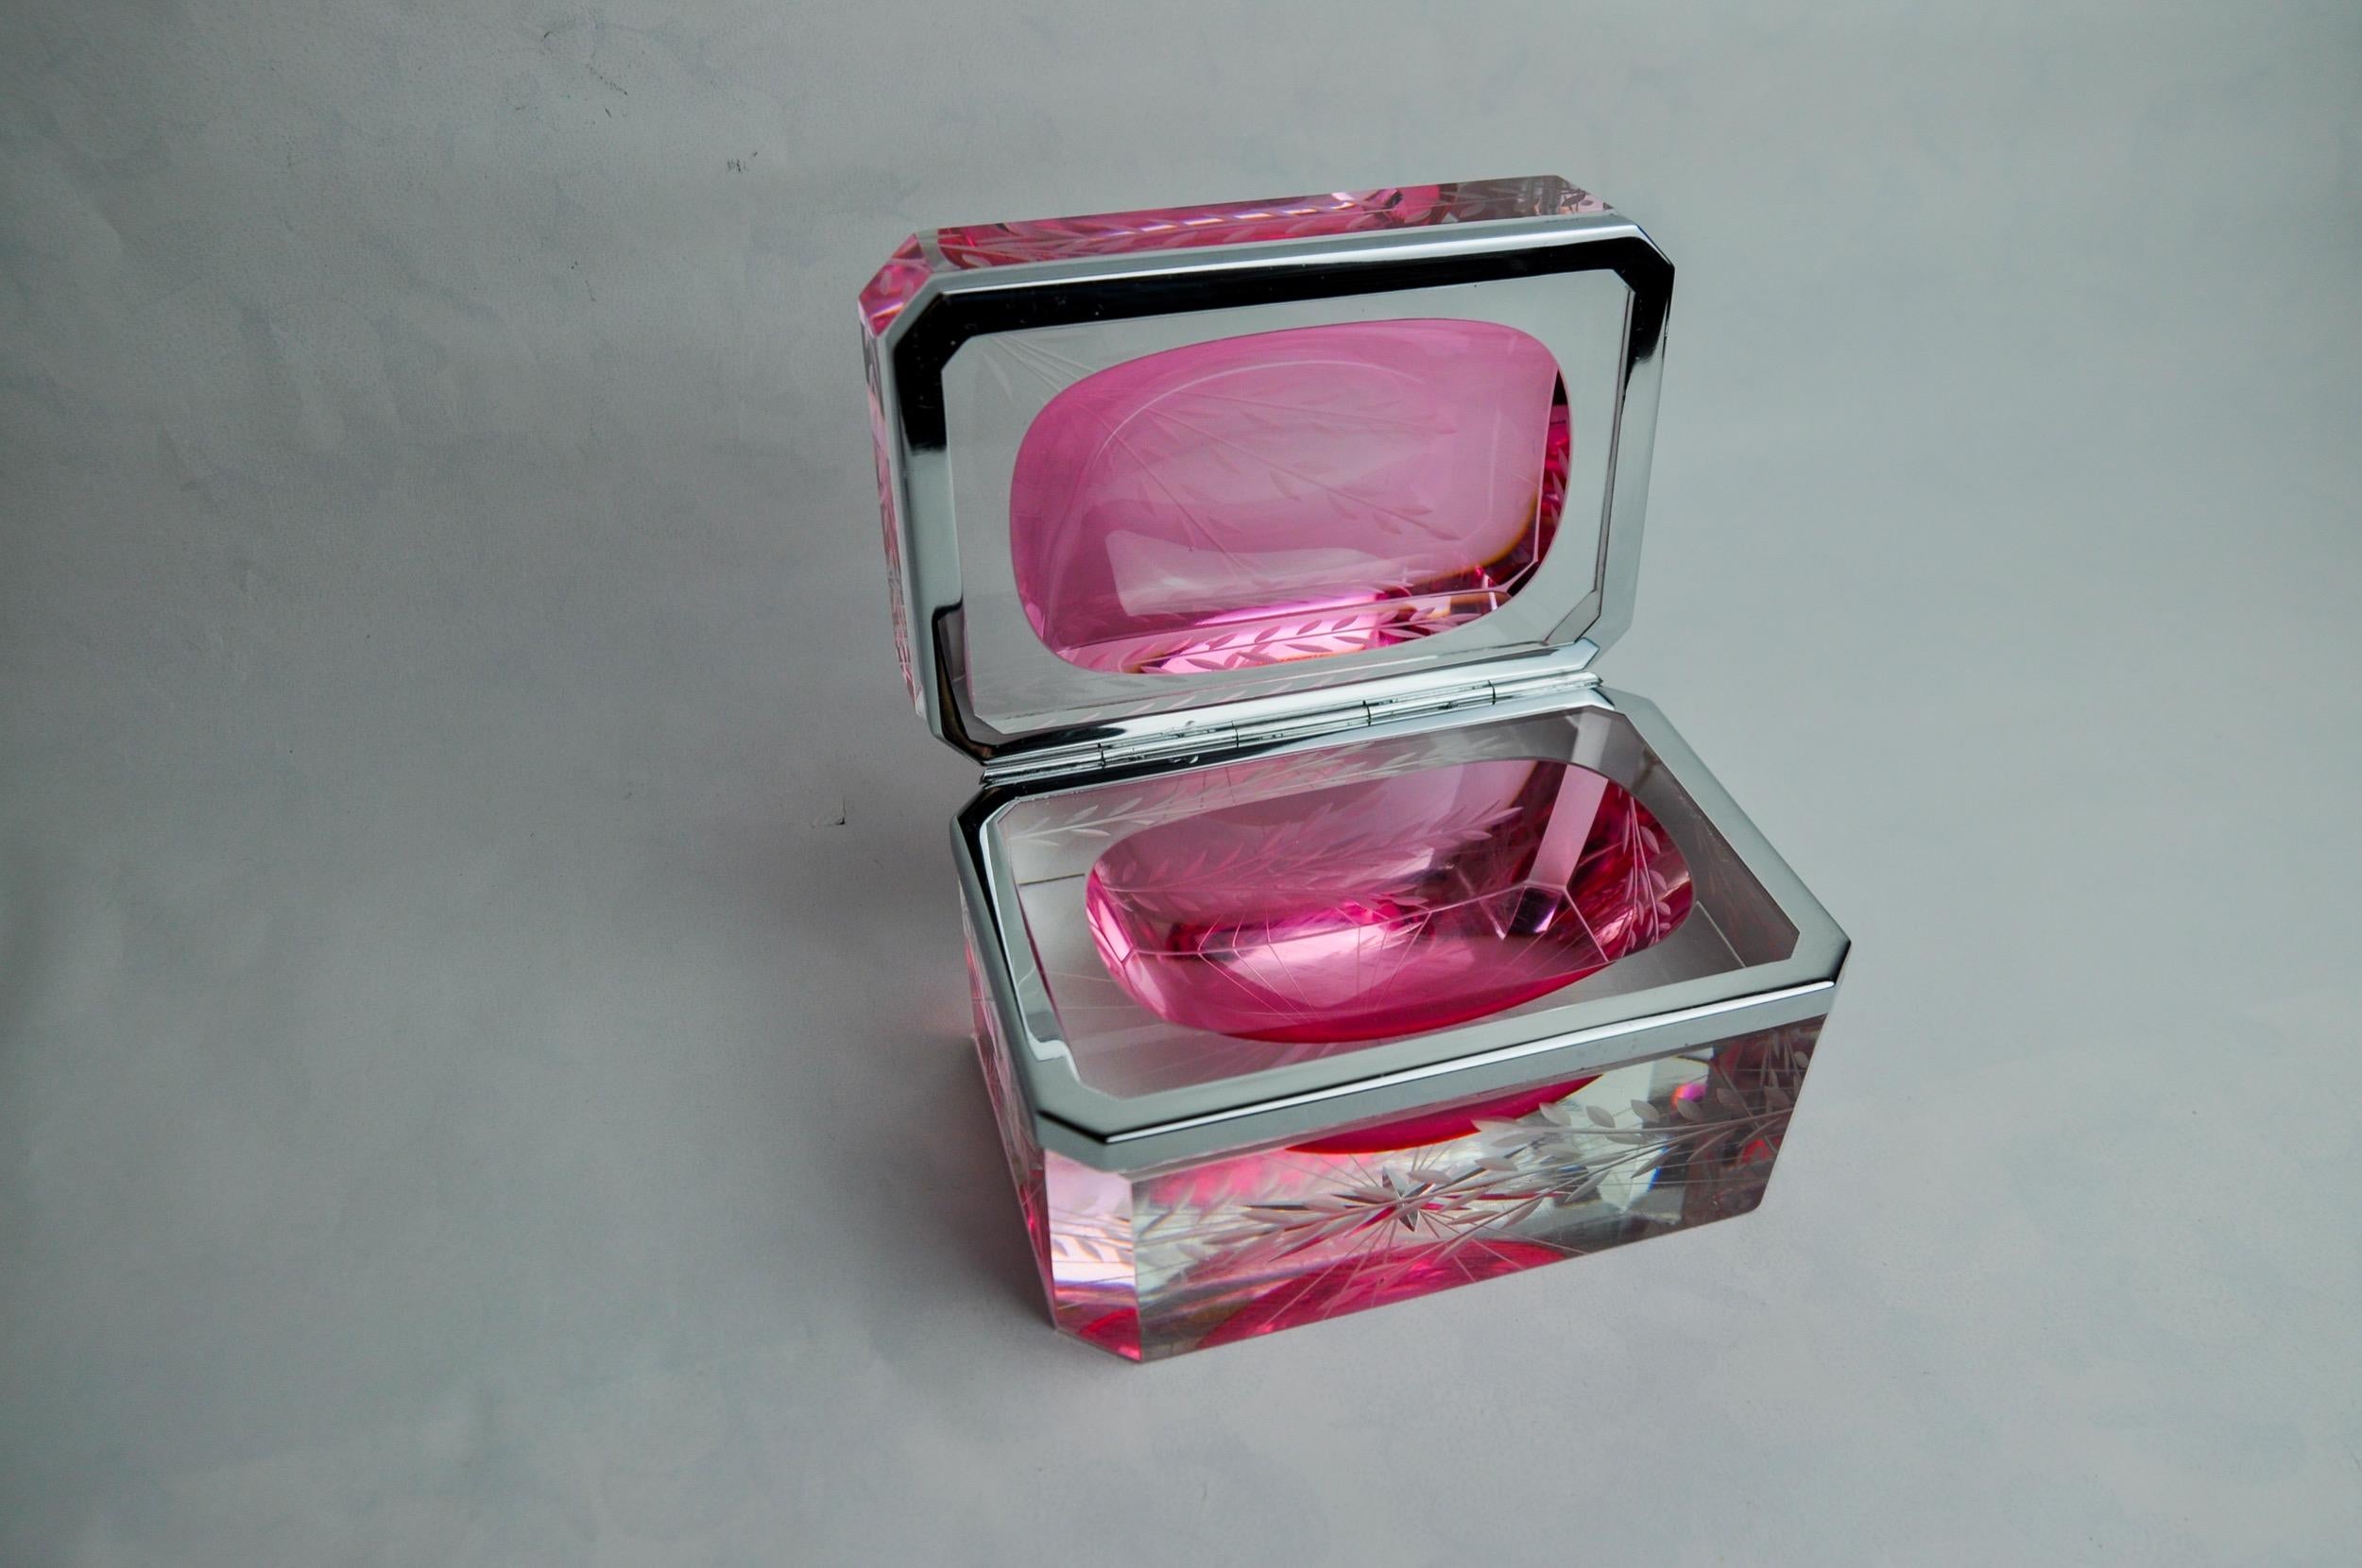 Hervorragende und seltene rosa Sommerso-Box entworfen und hergestellt von Alessandro Mandruzzato in Murano in den 1960er Jahren. Außergewöhnliche Glaskunst nach der Sommerso-Technik (Überlagerung von Schichten geschmolzenen Glases) mit